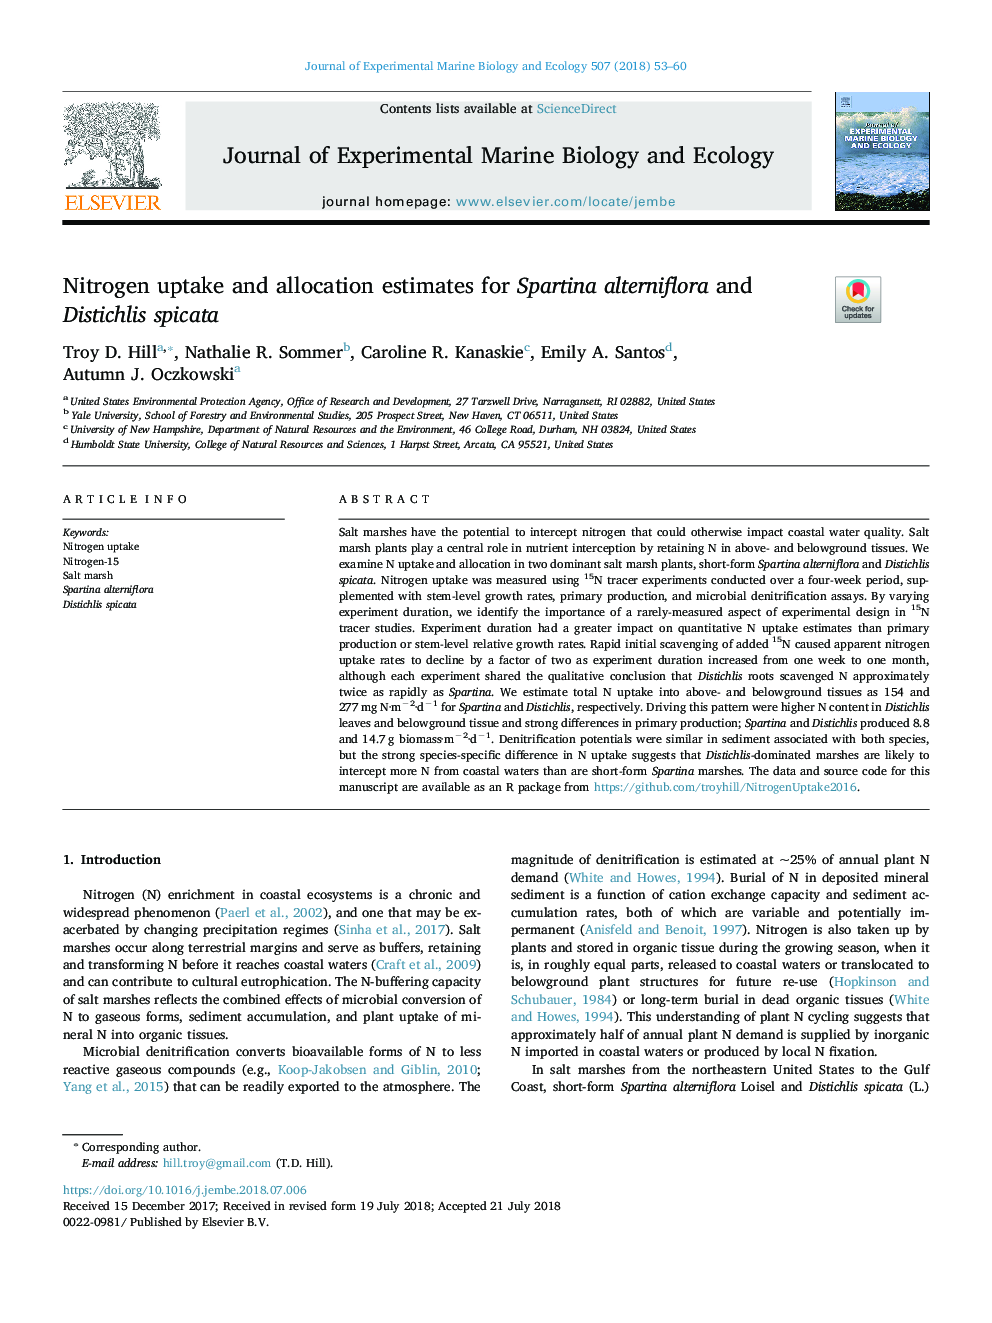 Nitrogen uptake and allocation estimates for Spartina alterniflora and Distichlis spicata